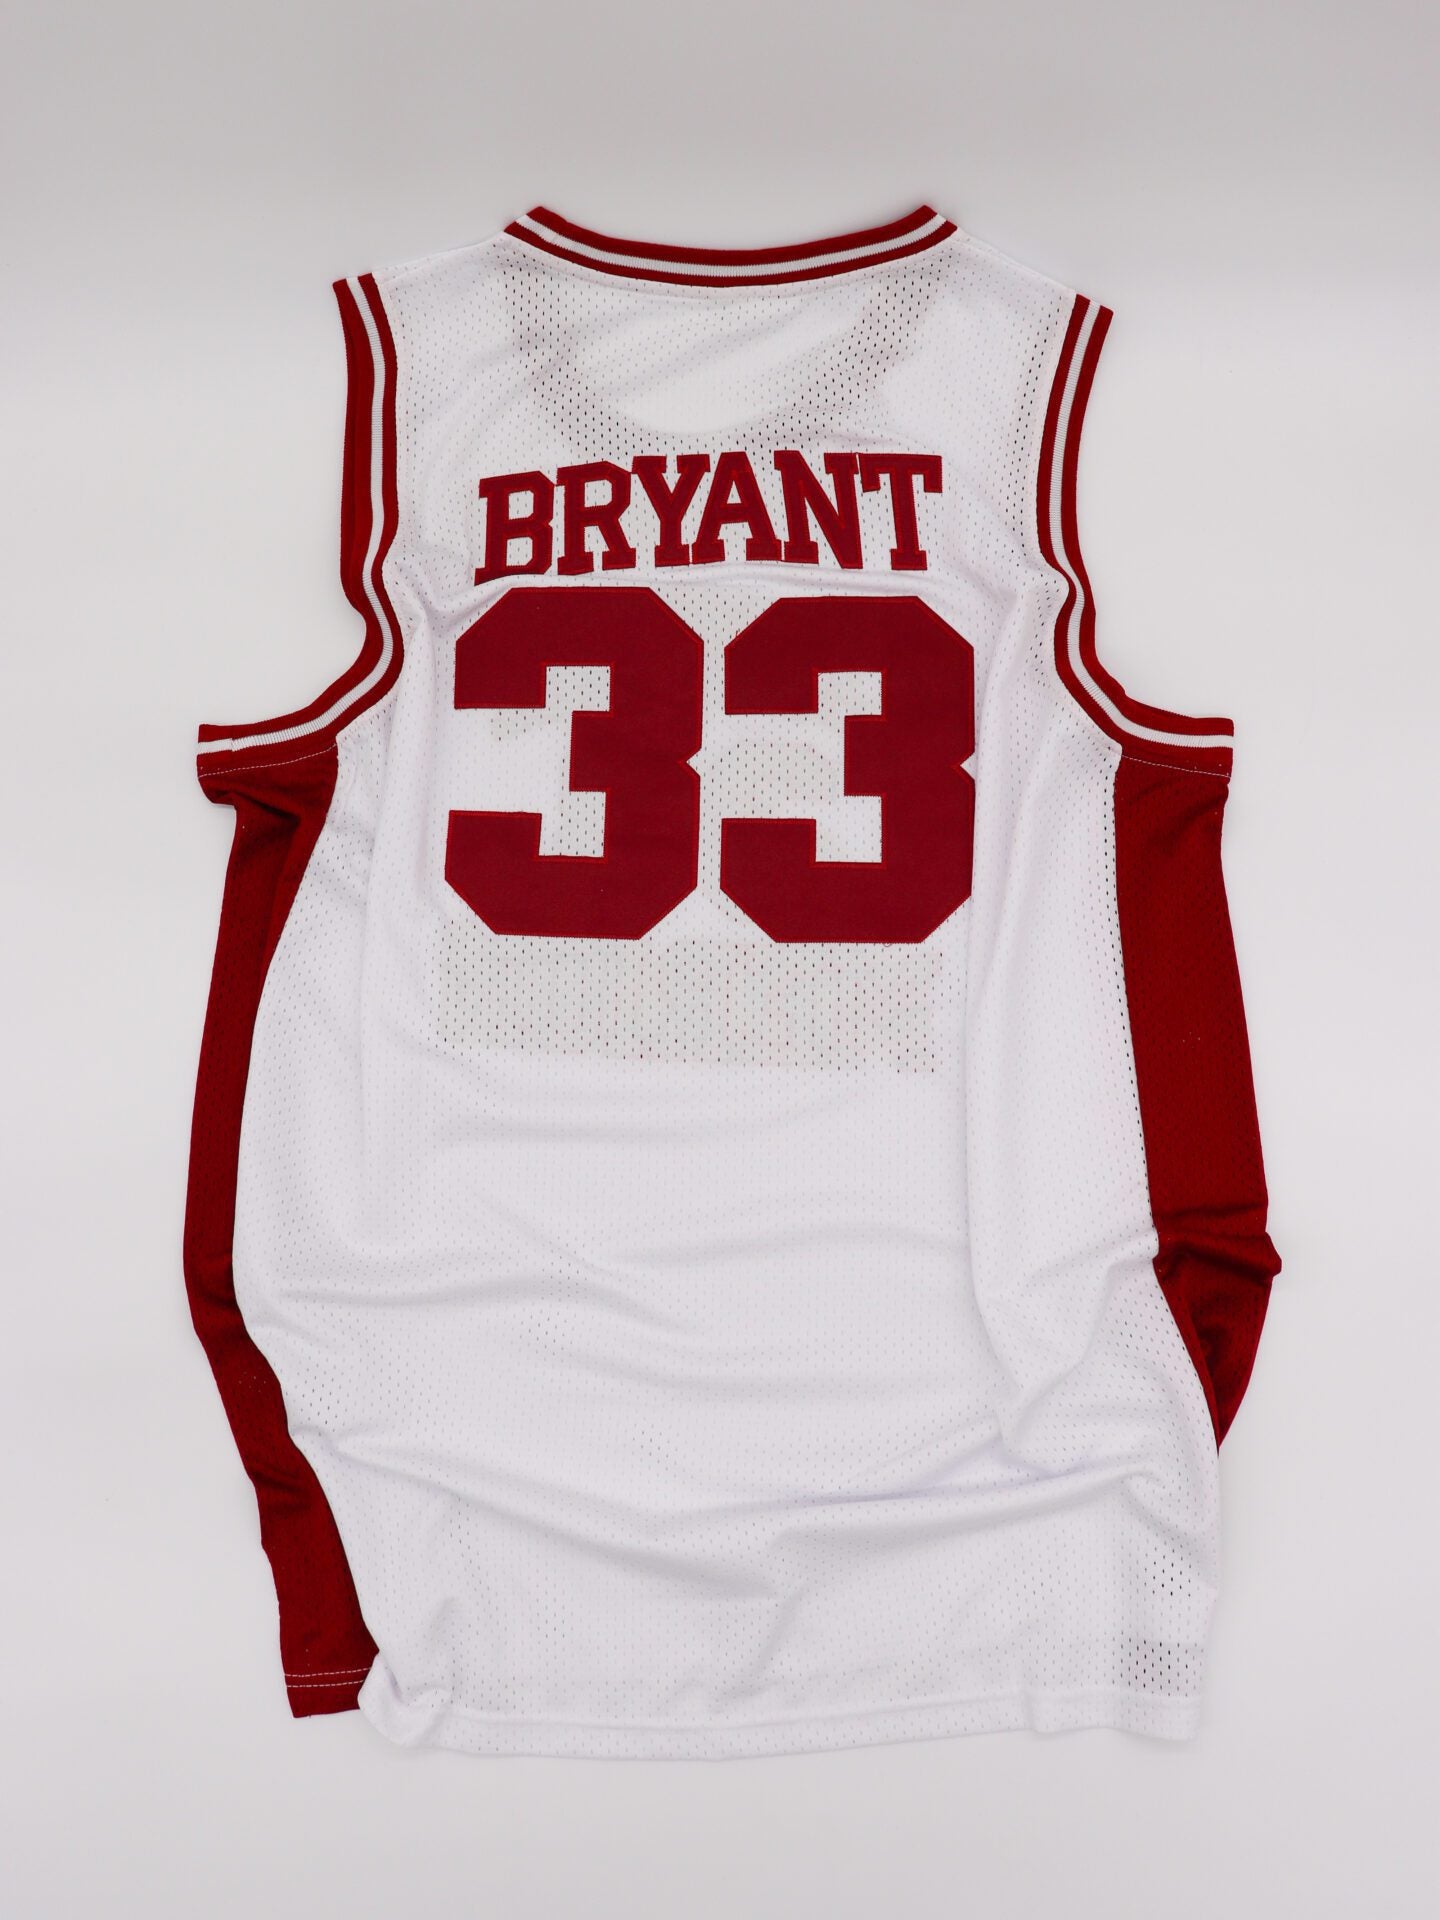 Kobe Bryant Jerseys for sale in Salt Lake City, Utah